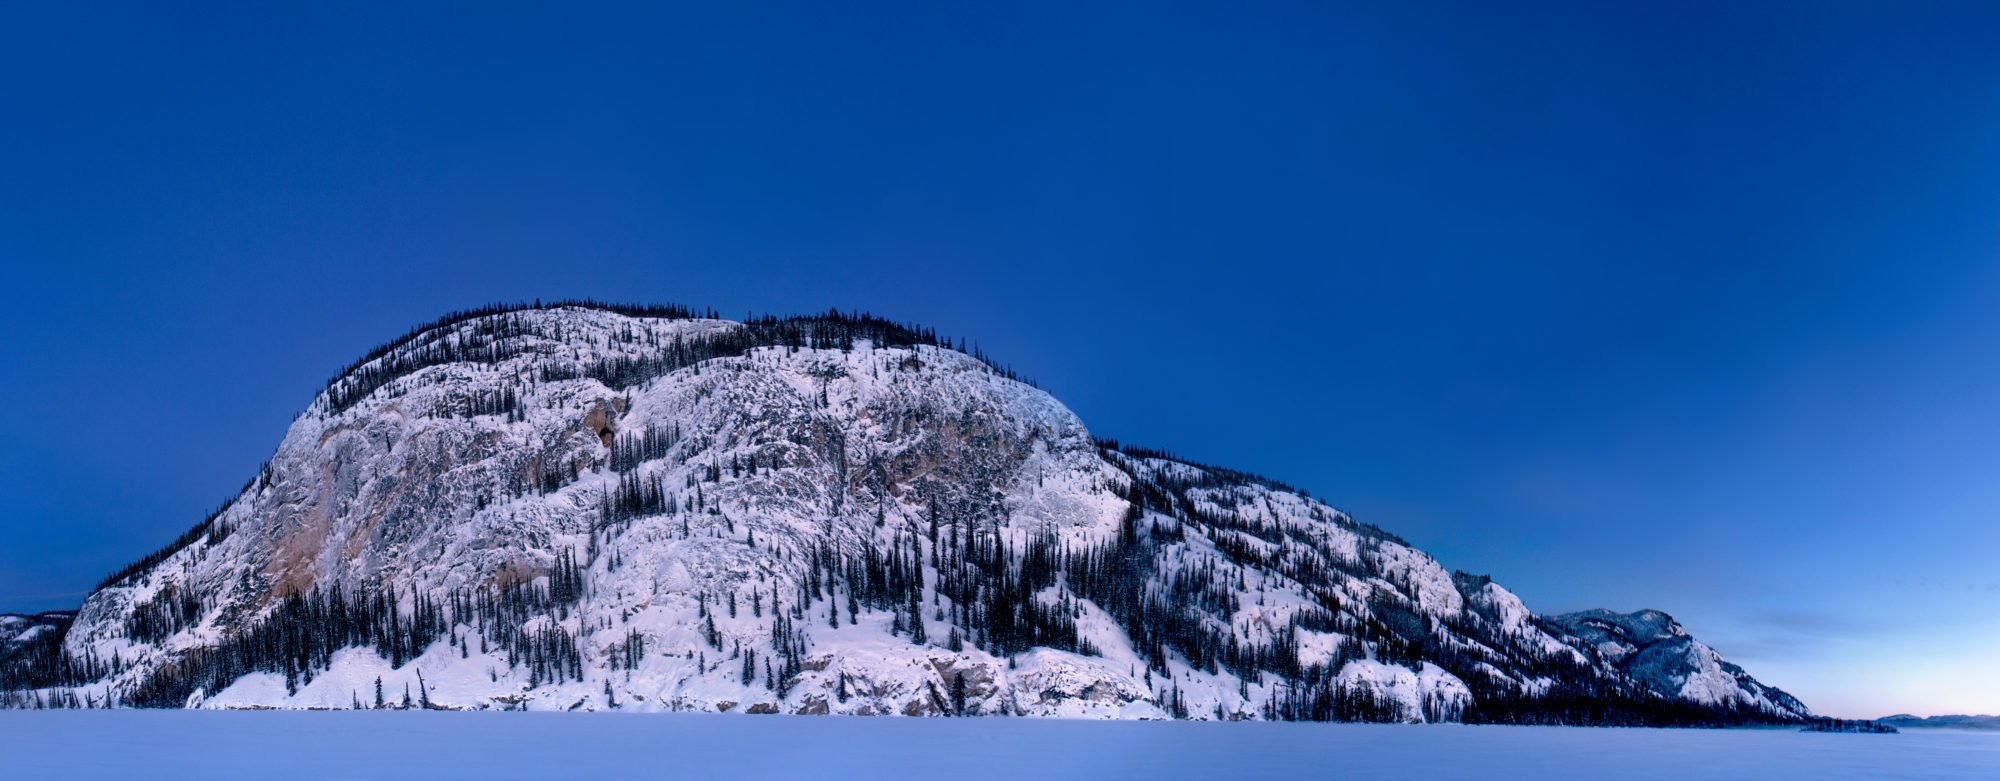 Foto di una montagna innevata emerge da un lago ghiacciato al crepuscolo